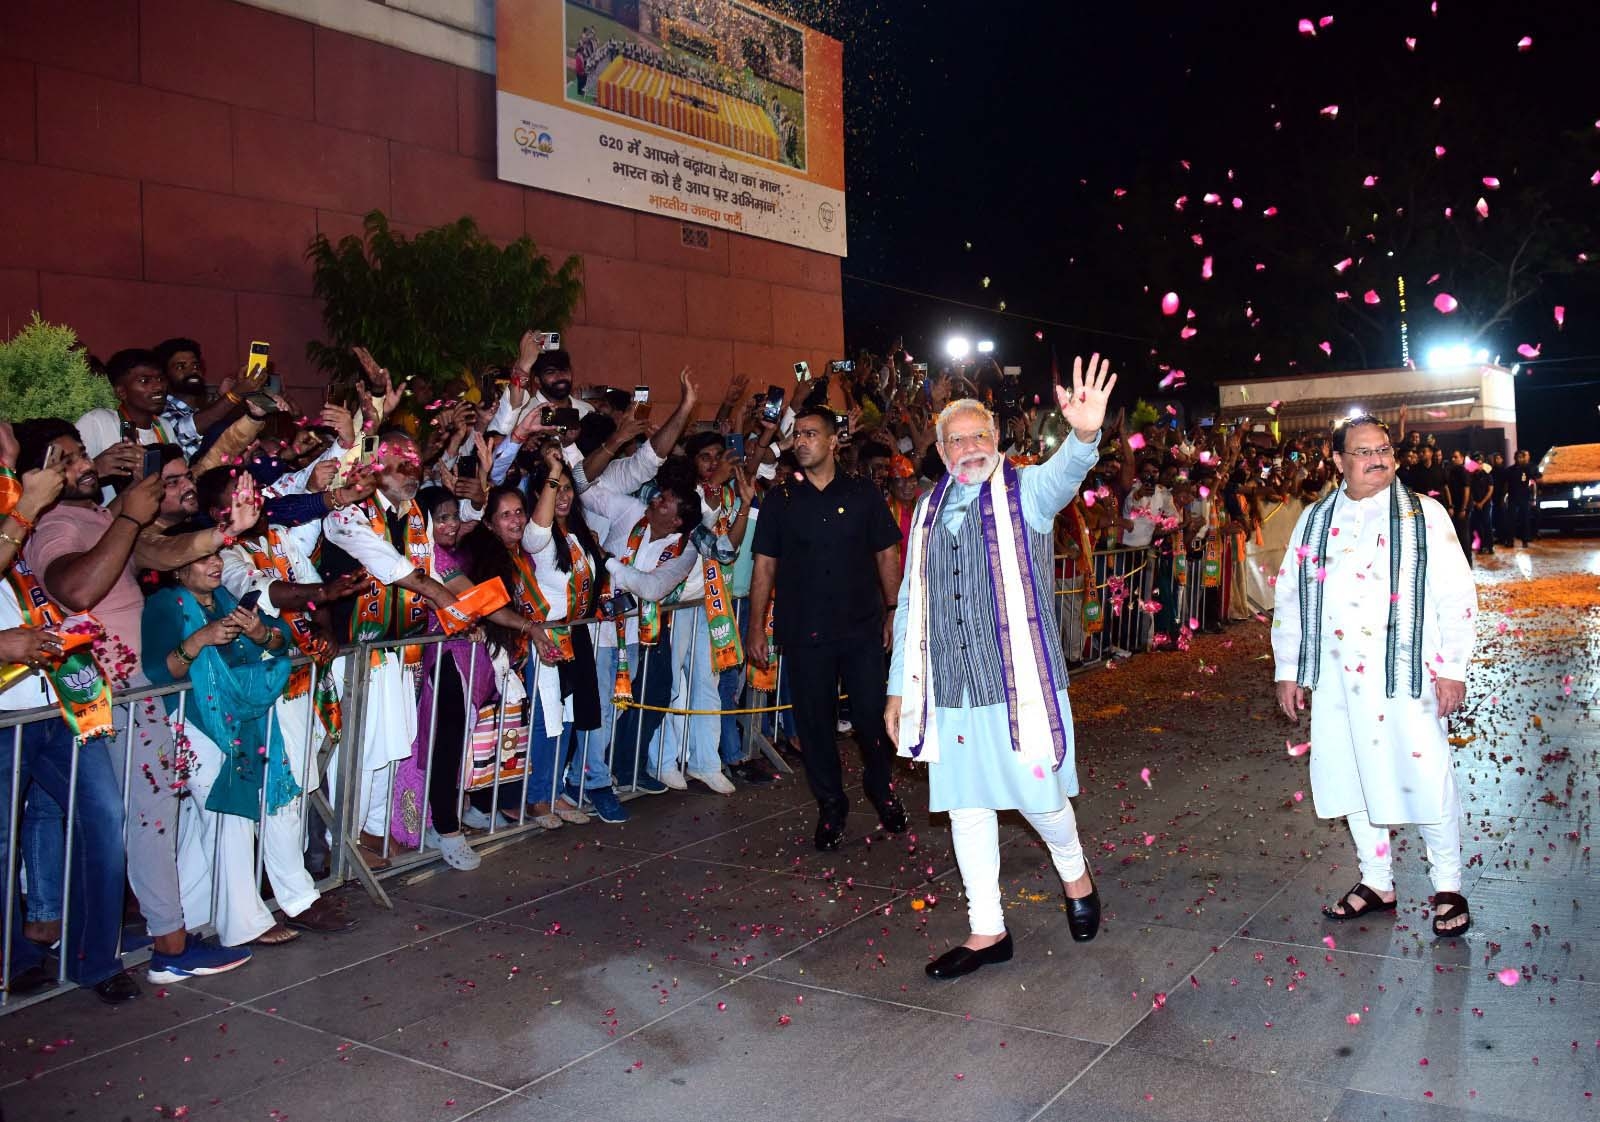 नई दिल्ली में 13 सितंबर, को जी 20  की अपार सफलता के बाद भाजपा कार्यालय आगमन पर पार्टी के वरिष्ठ नेताओं एवं कार्यकर्ताओं ने पीएम नरेन्द्र मोदी का भव्य स्वागत किया। हिन्दुस्थान समाचार/ फोटो गणेश बिष्ट